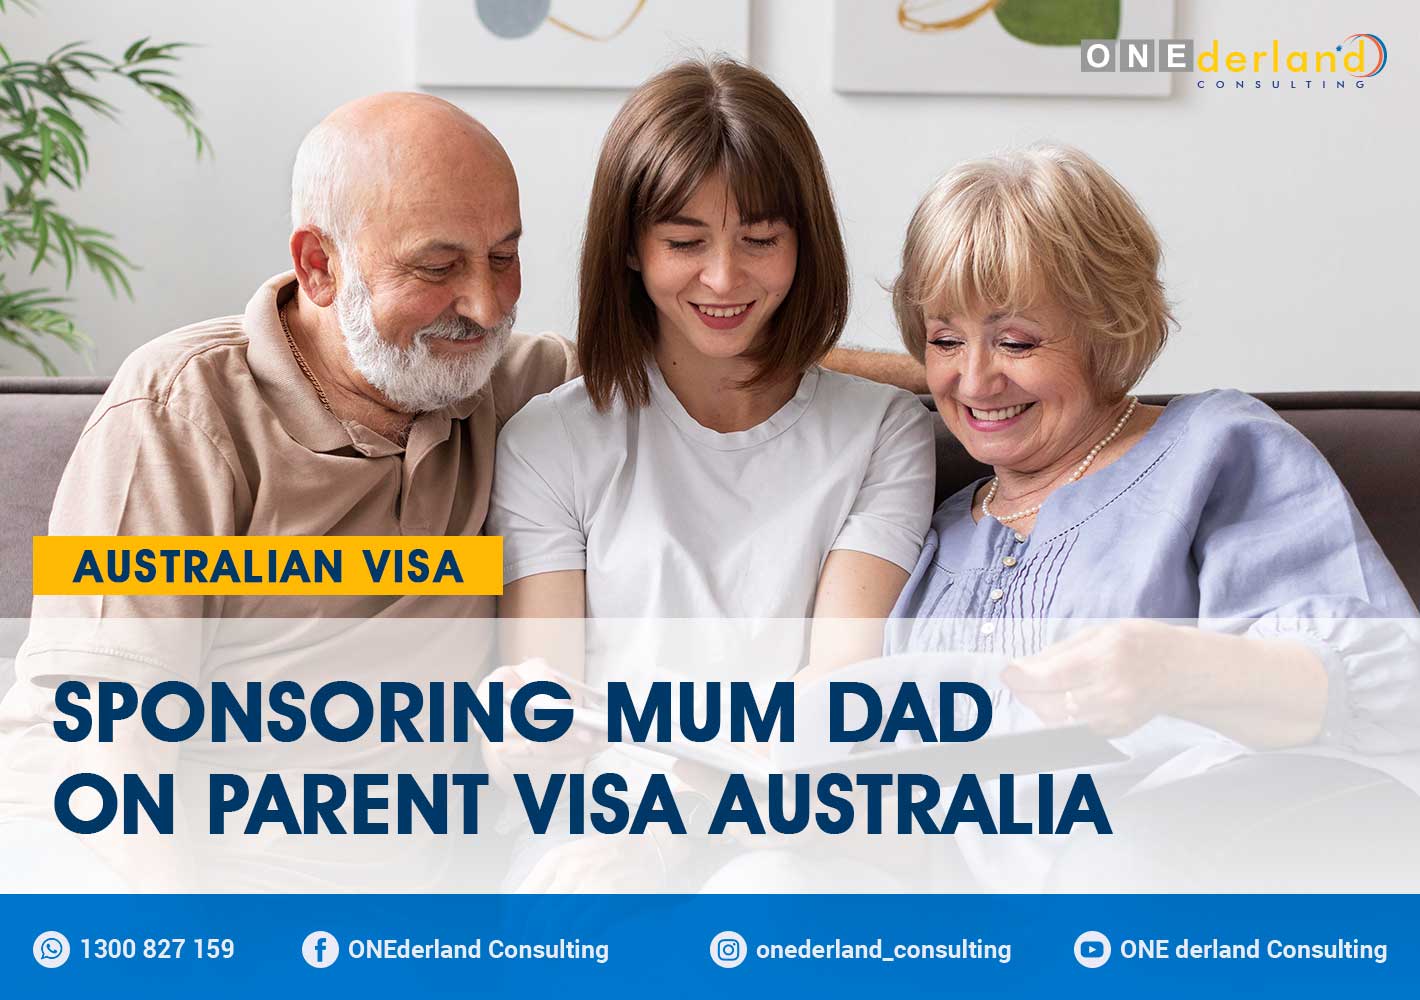 Sponsoring Mum Dad on Parent Visa Australia